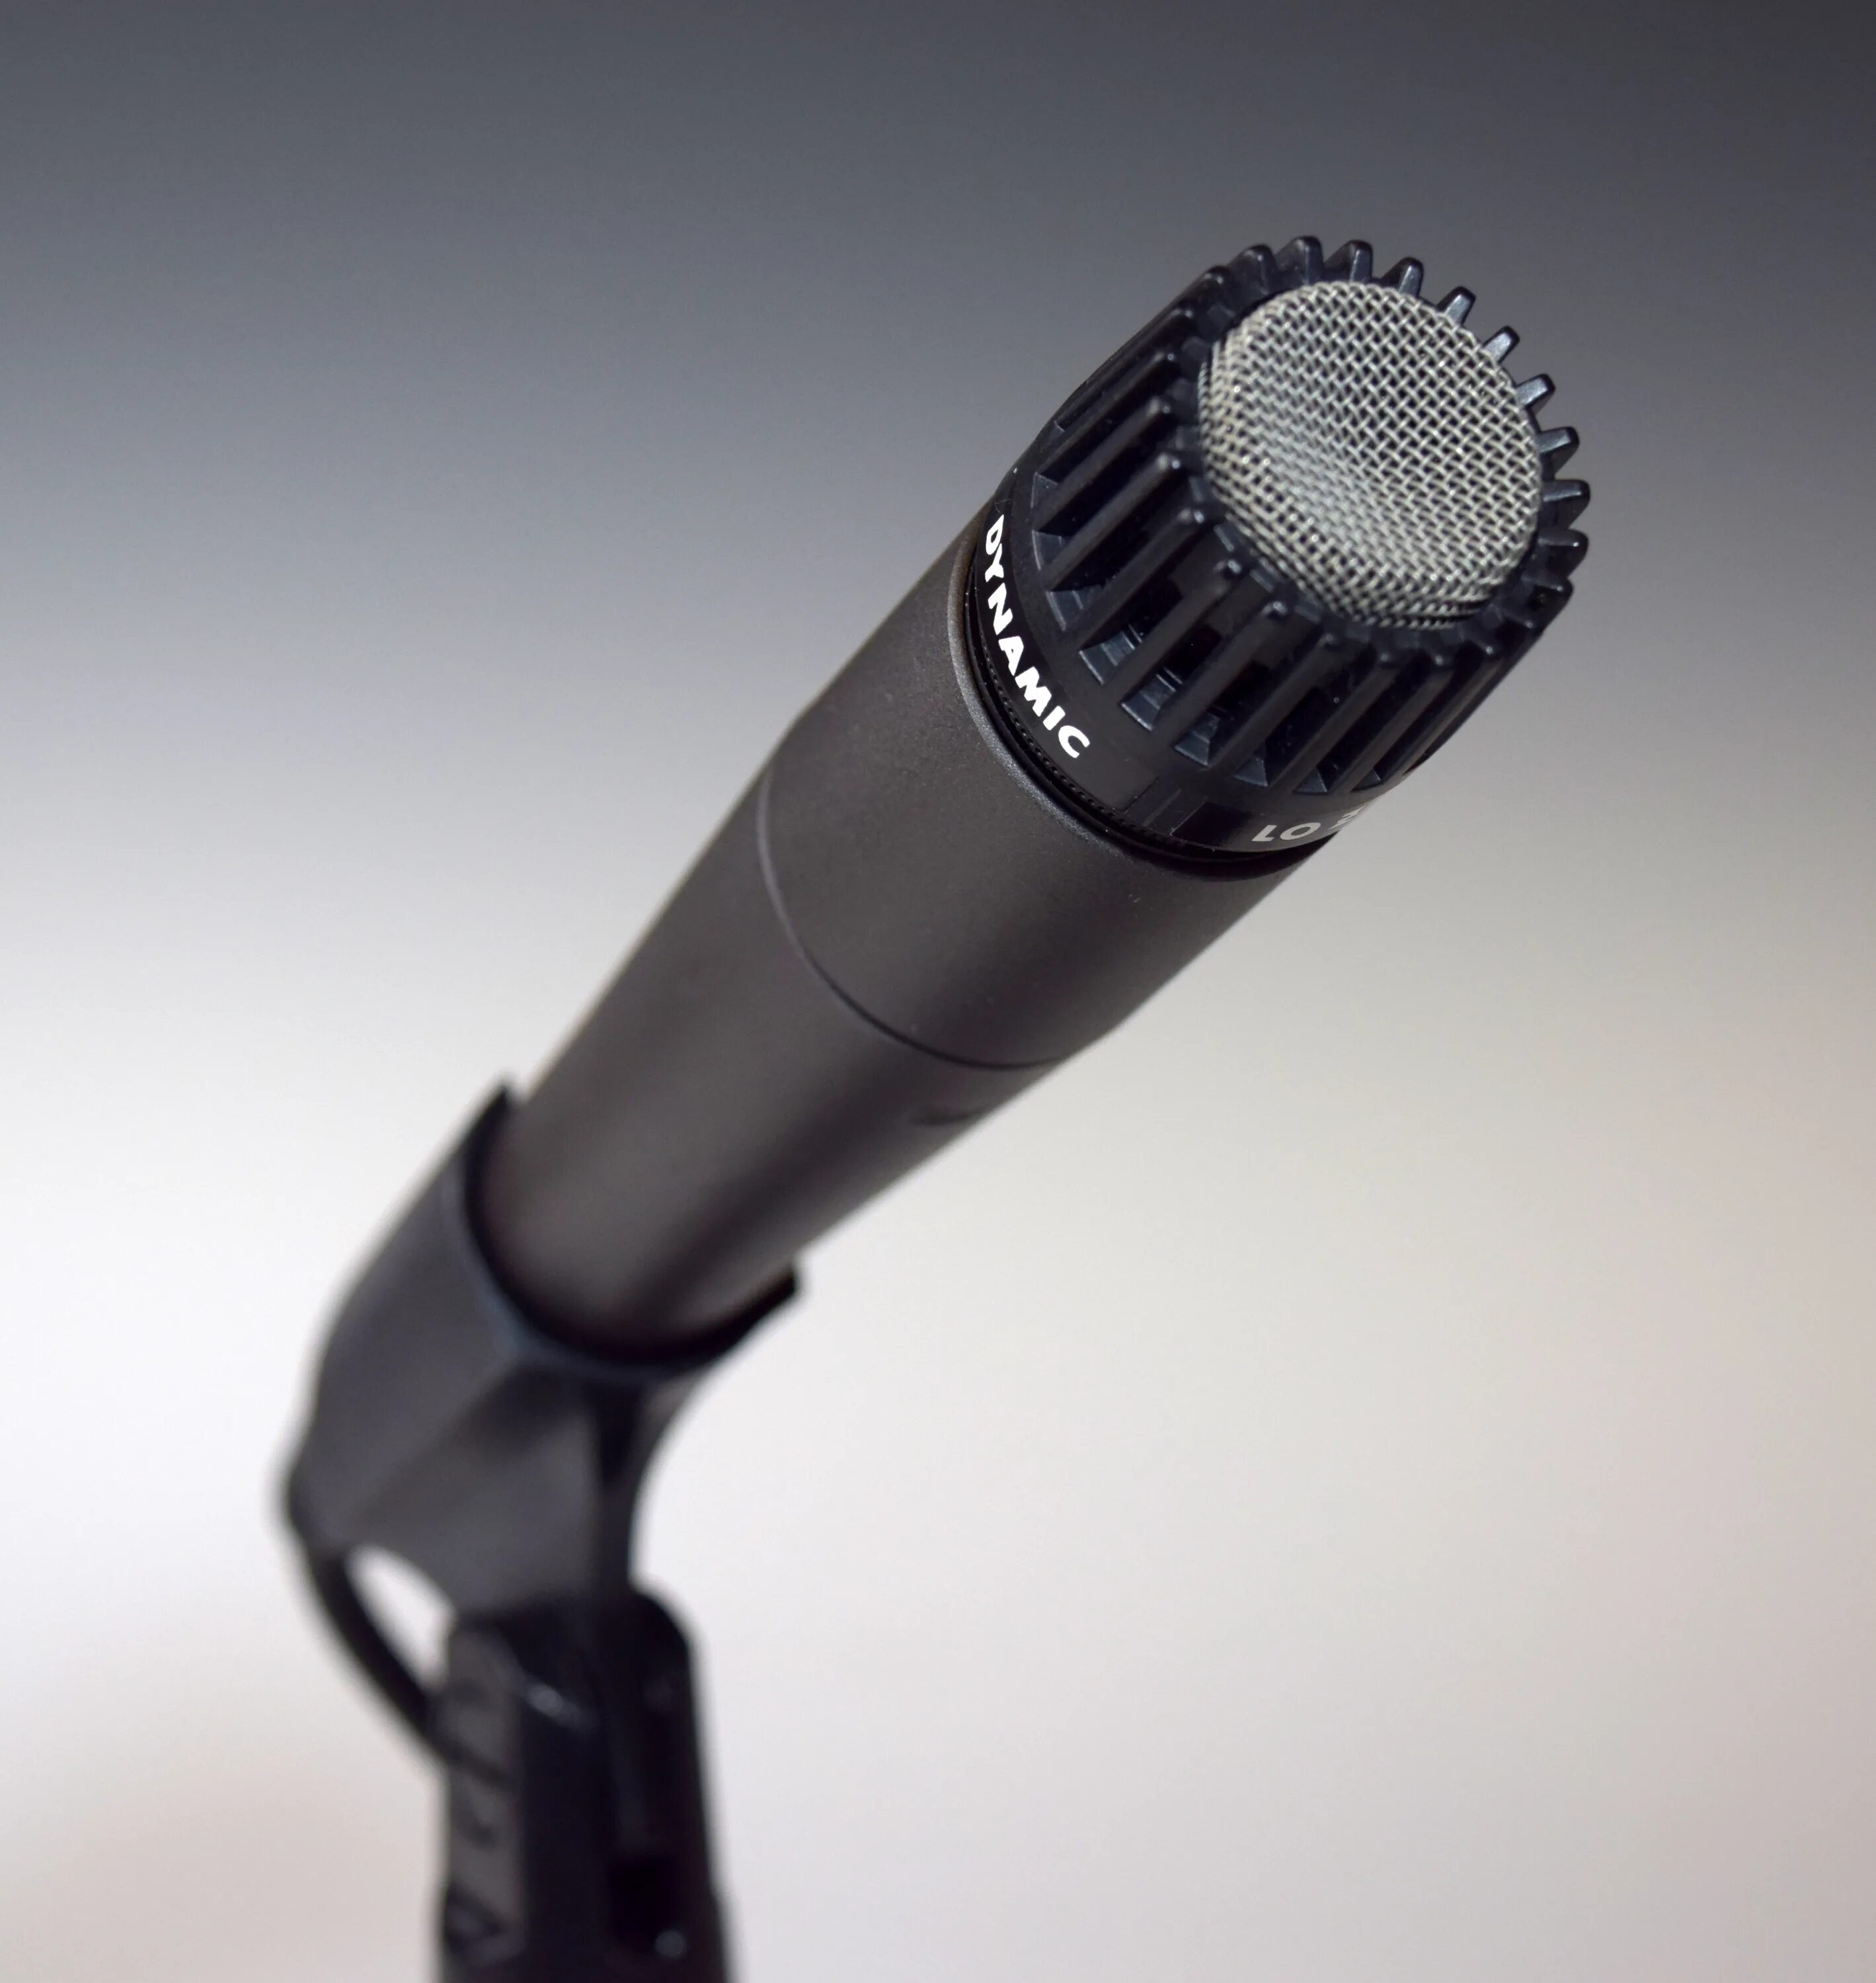 Динамический микрофон AUD-98xlr. Shur mikrafon беспроводной. Микрофон динамический беспроводной. Современные микрофоны. Лучшие микрофоны для общения